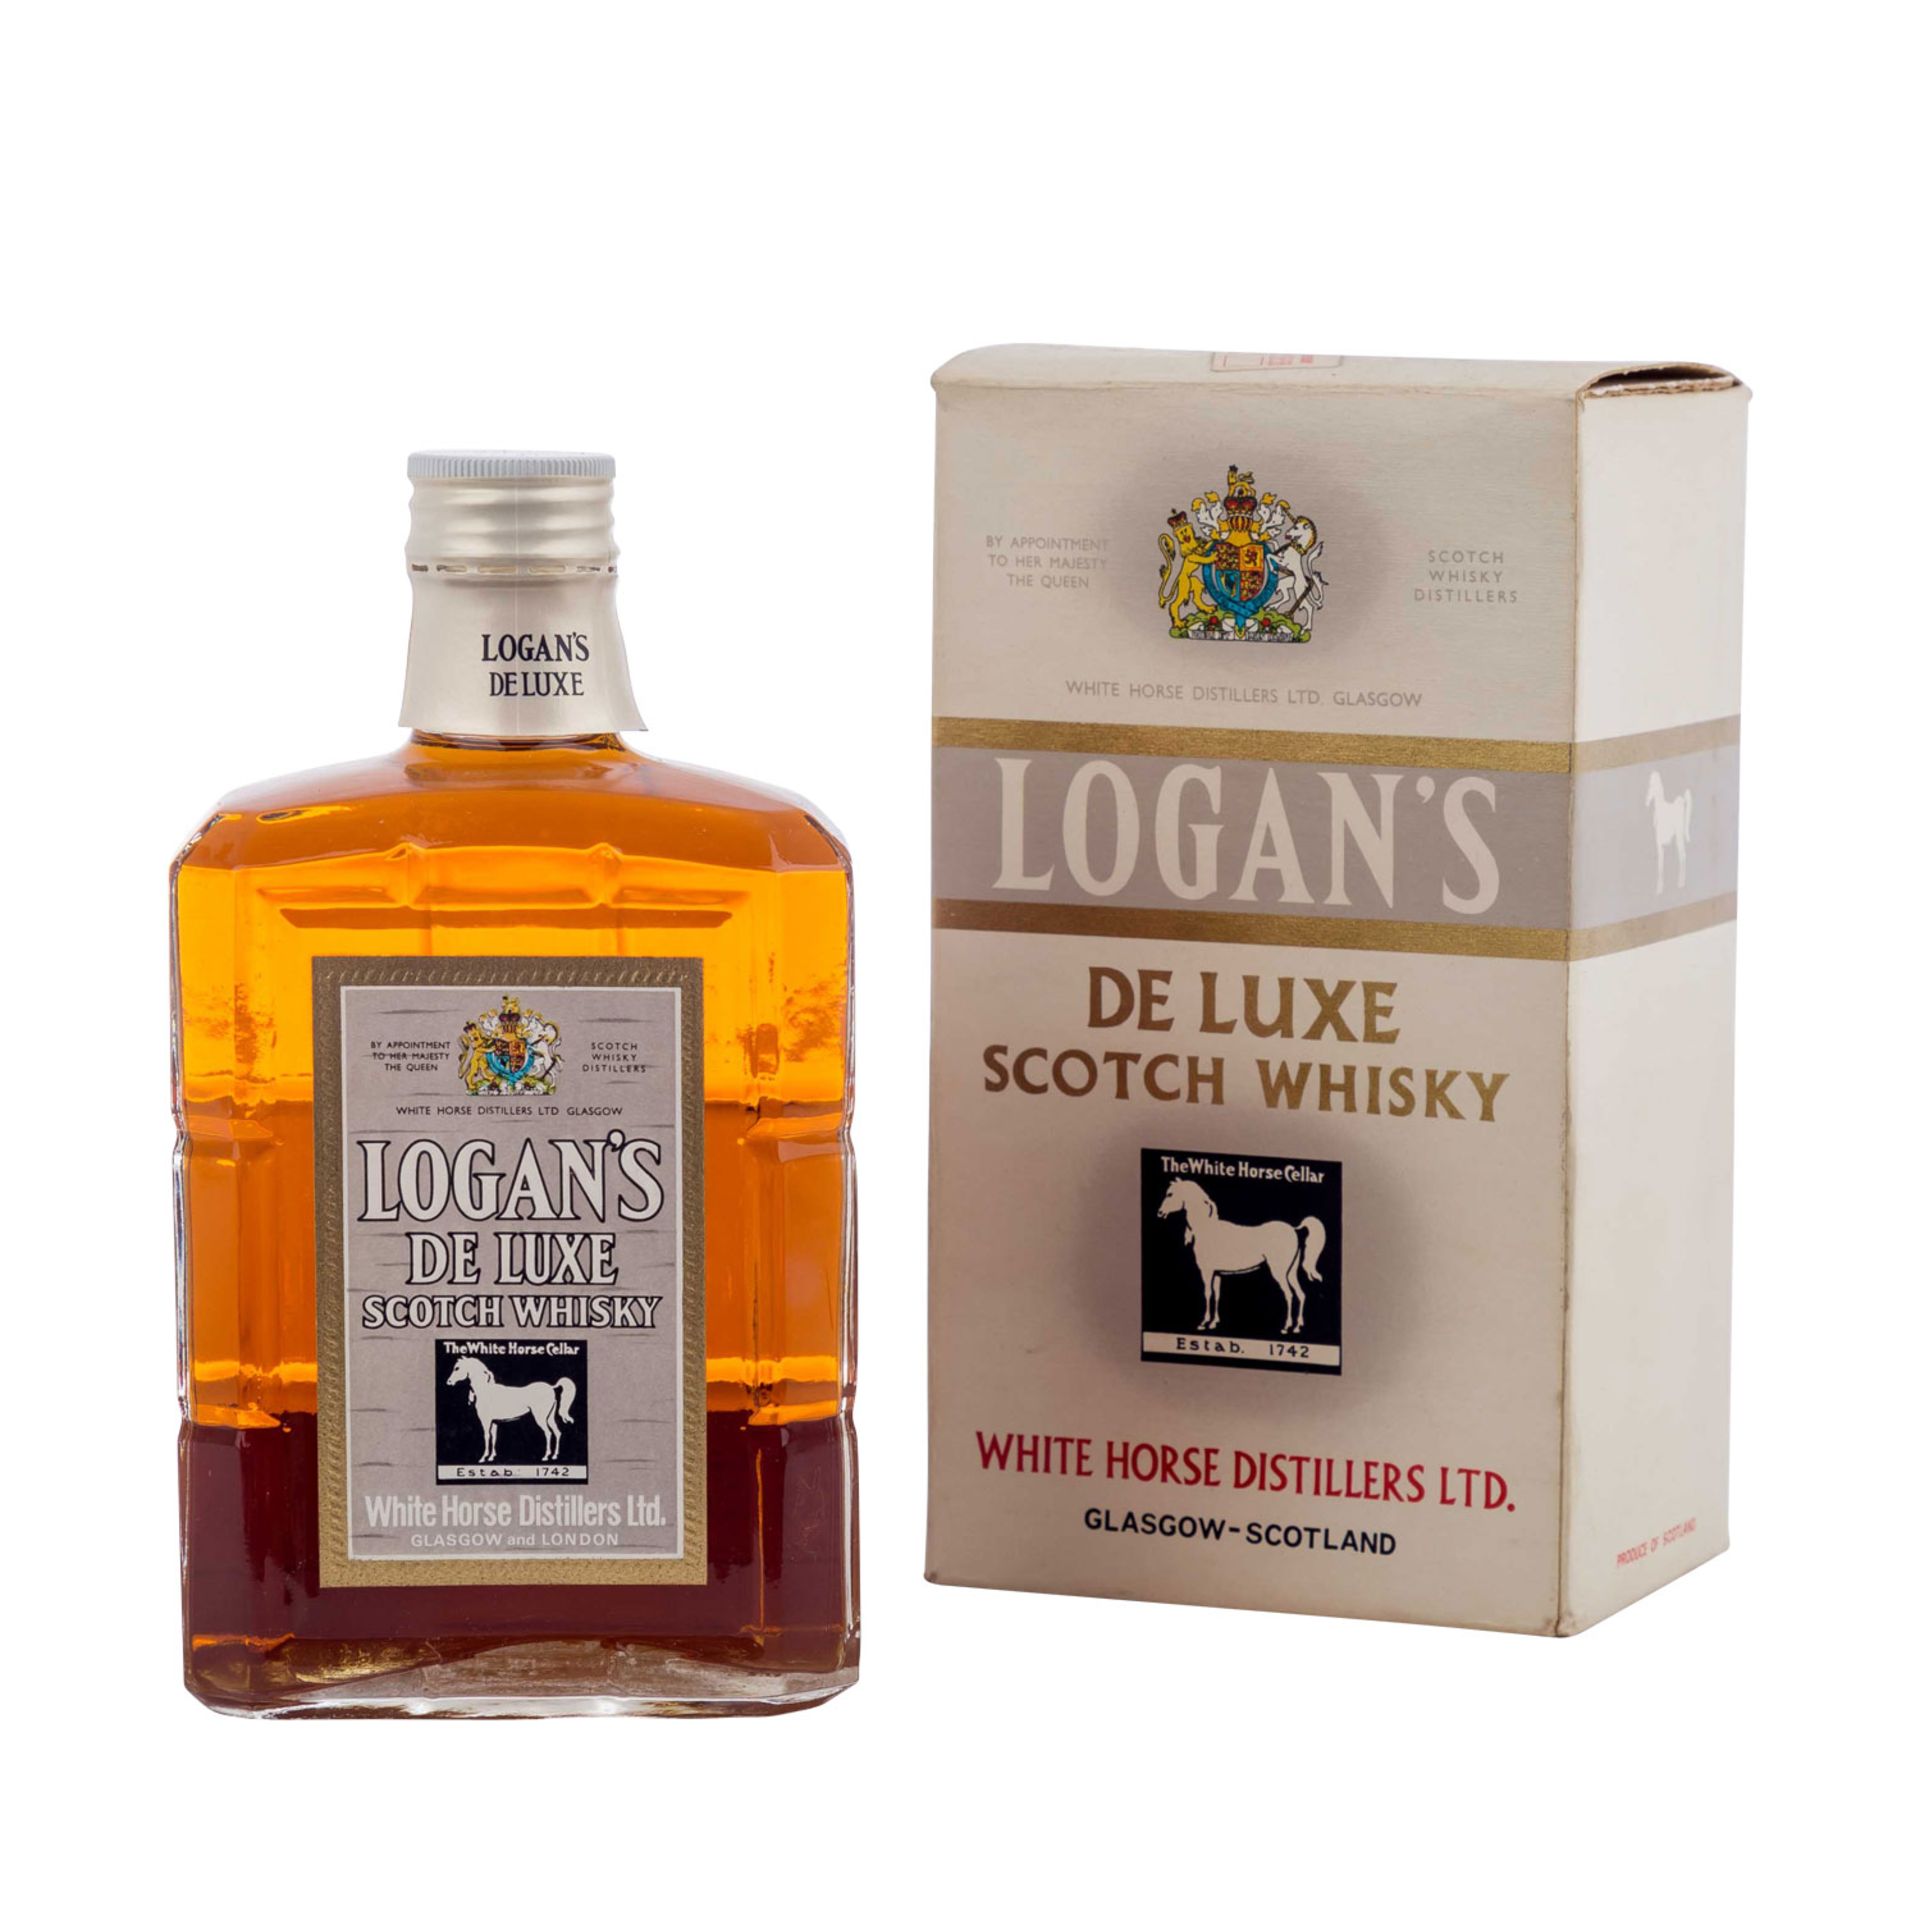 LOGAN'S DE LUXE Blended Scotch Whisky,Region: Scotland, White Horse Distillery, 1960/70er Jahre - Bild 2 aus 2